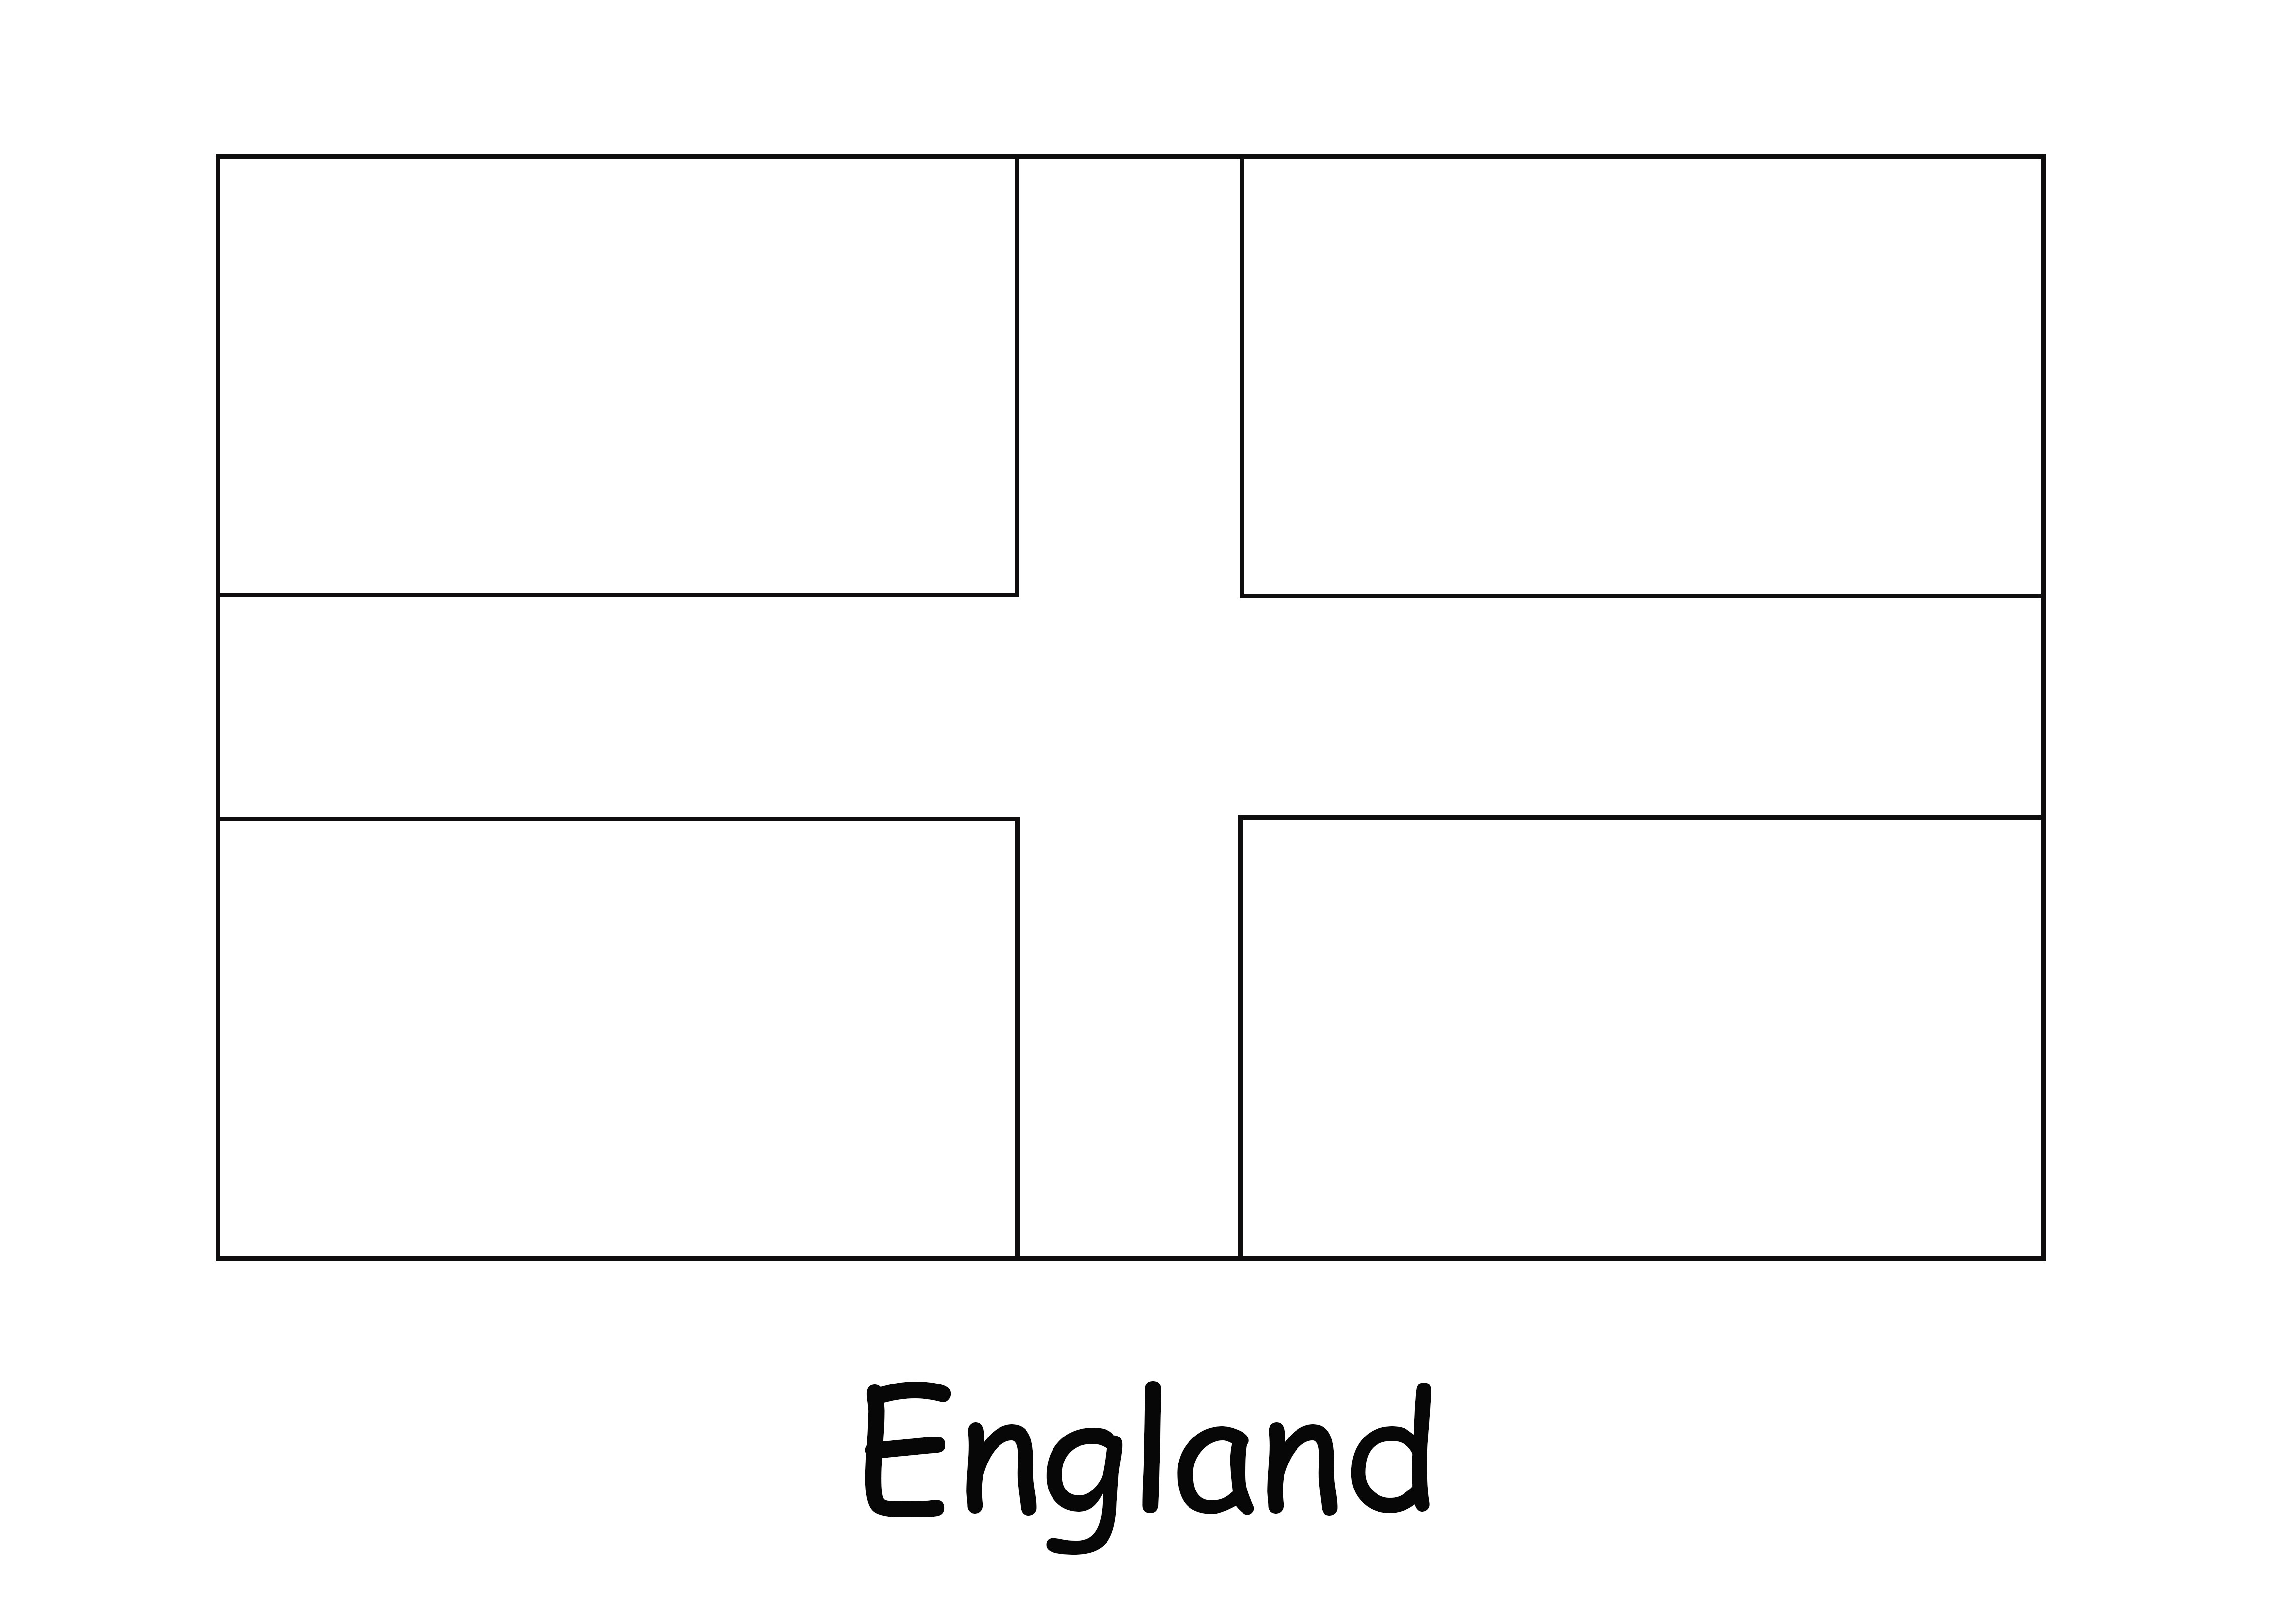 Bardzo prosty do pokolorowania i łatwy do wydrukowania obraz flagi Anglii dla dzieci